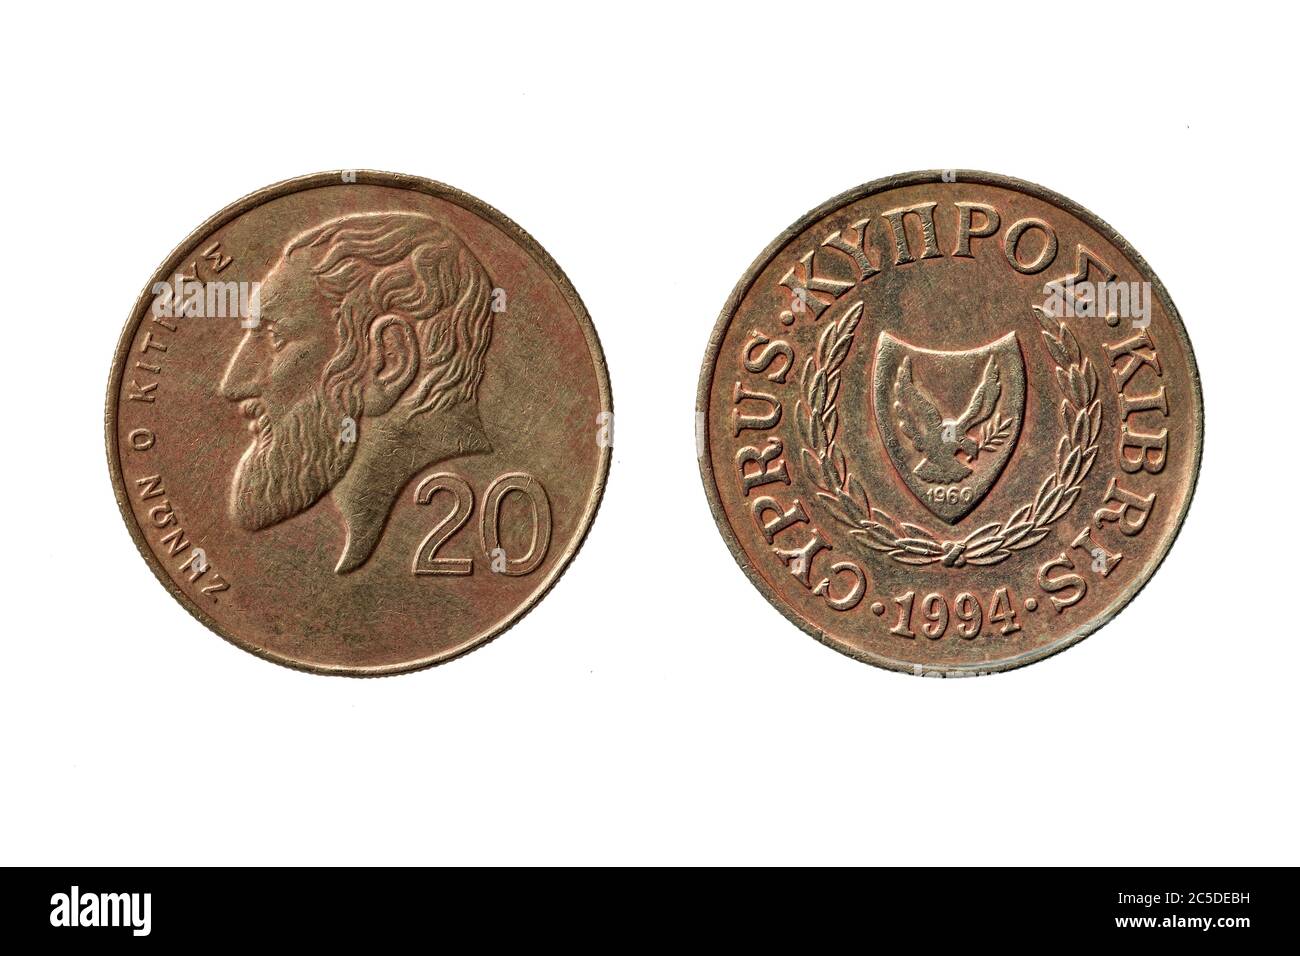 Vecchia moneta greca da 20 centesimi datata 1994 con un ritratto di Zeno di Citium Obverse e la cordata di armi di Cipro tagliato e isolato su una W. Foto Stock